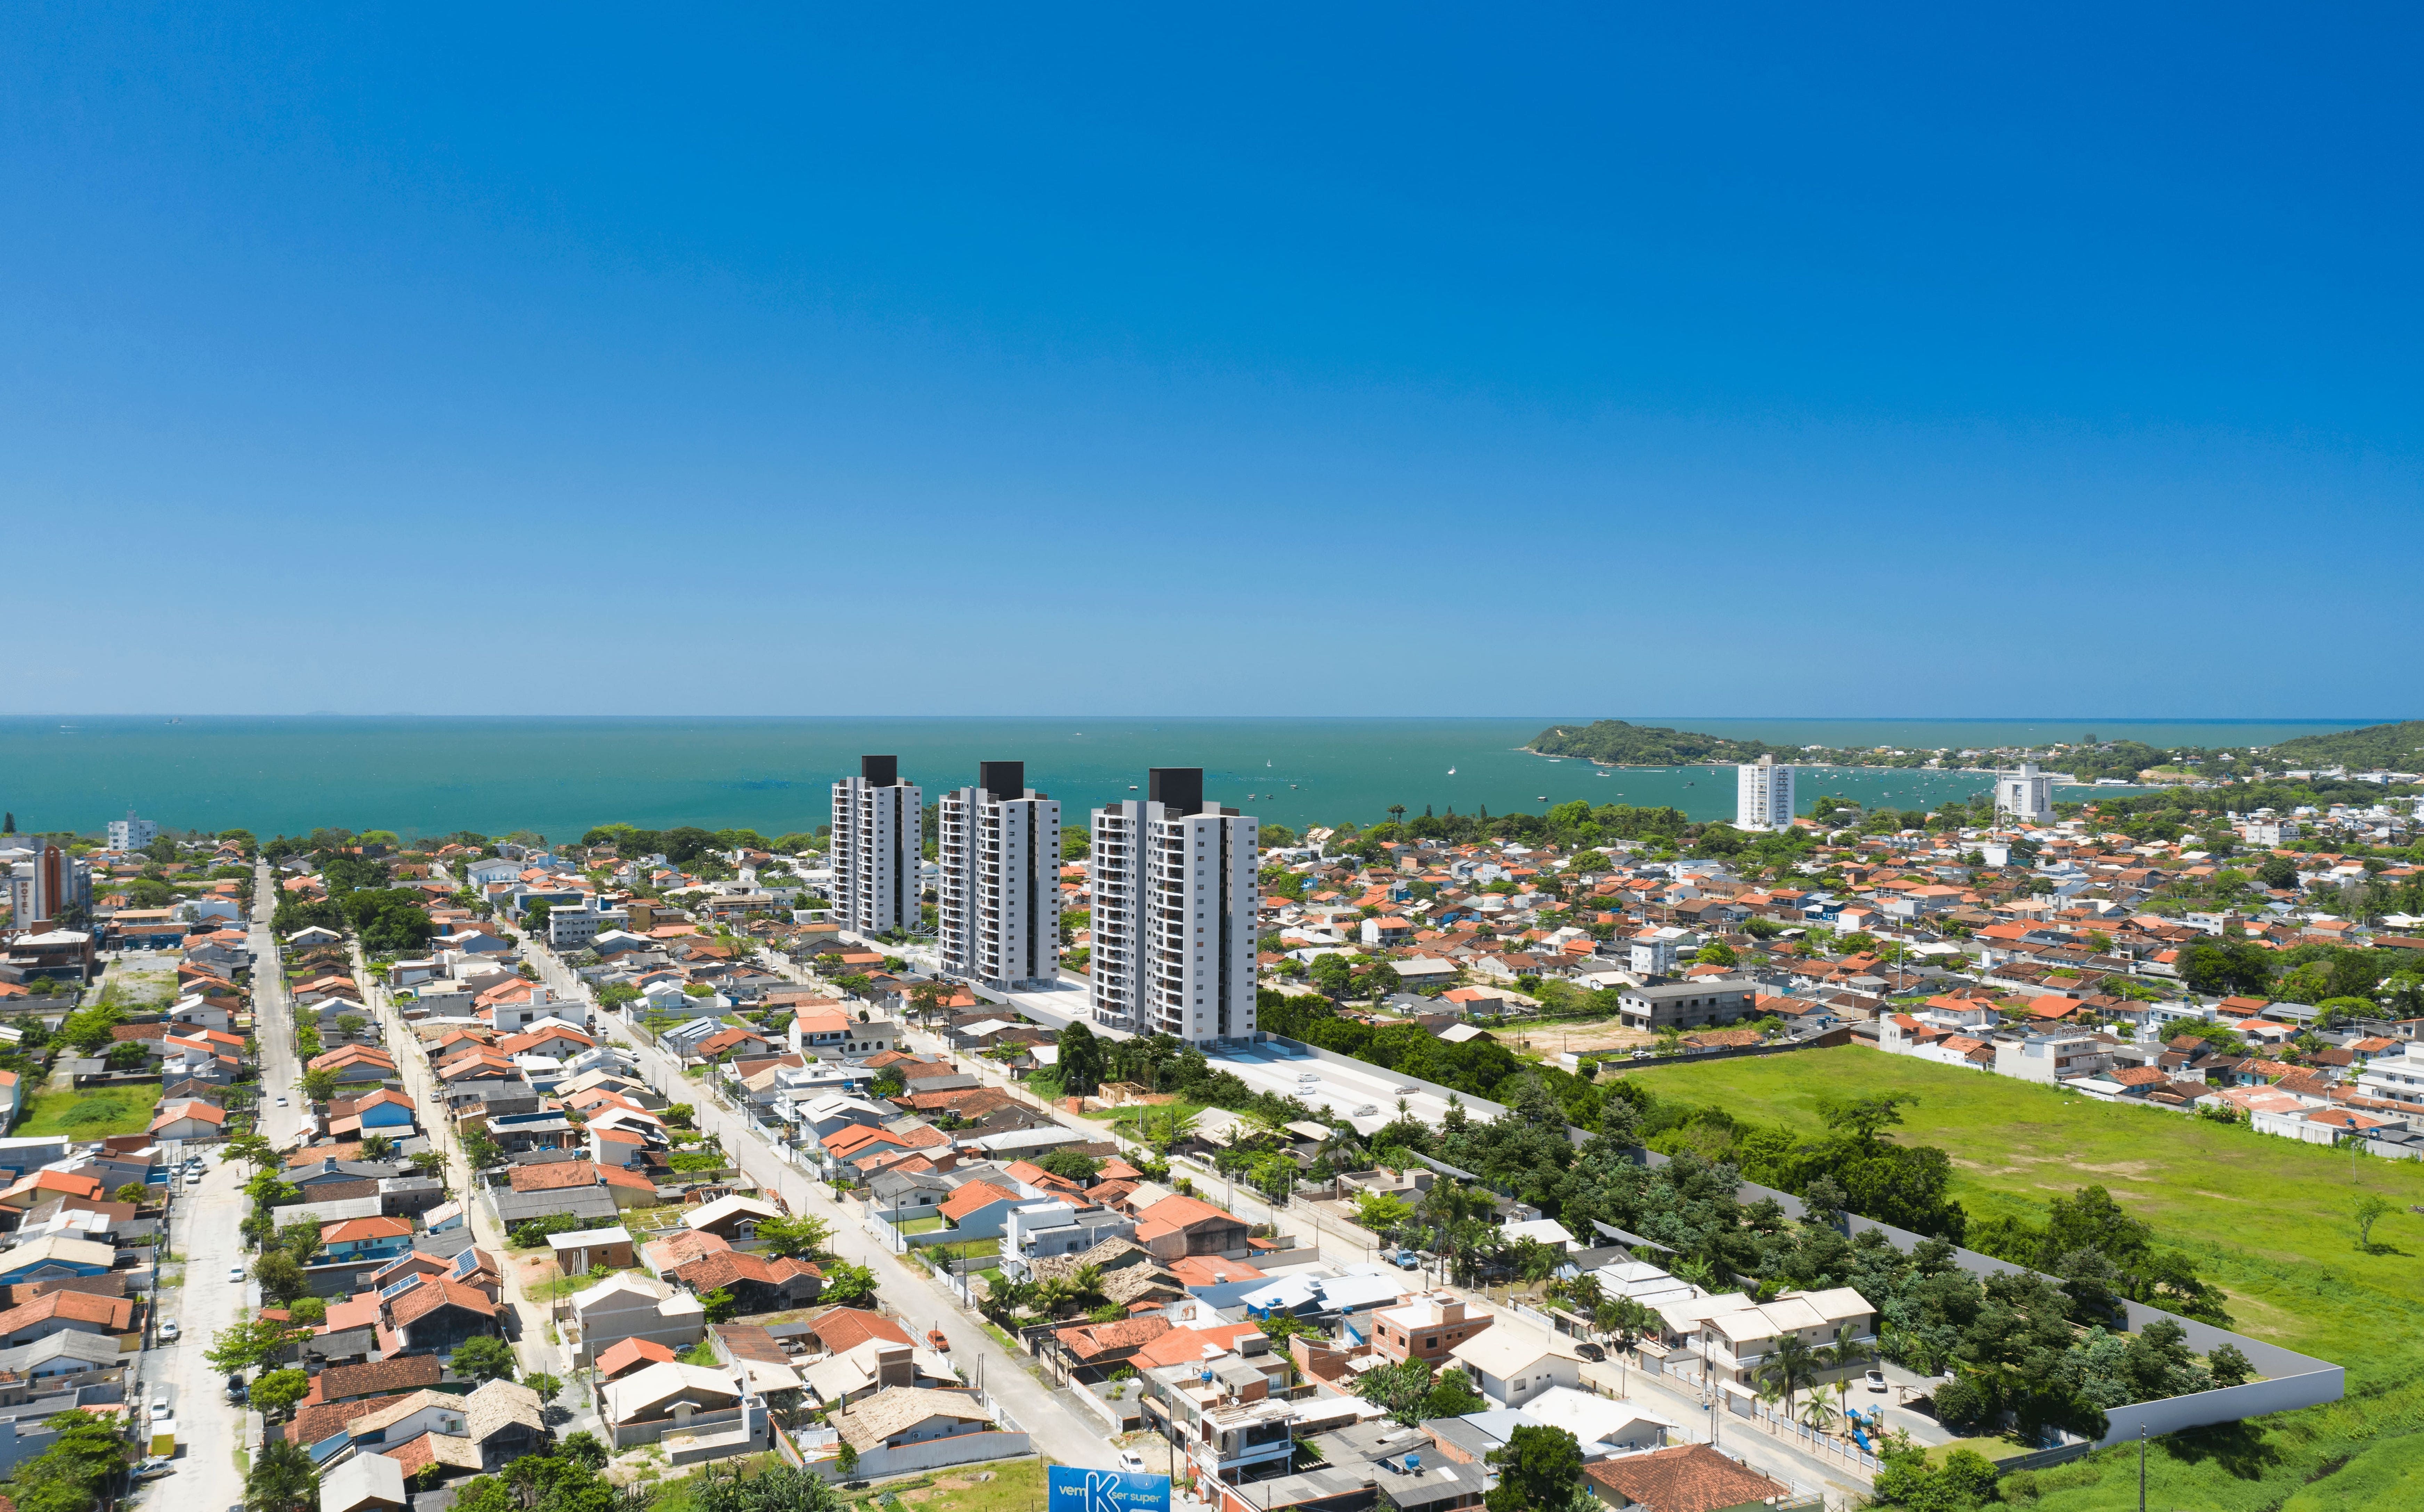 Photos at Big Tower - Praia da Armação - Penha, SC